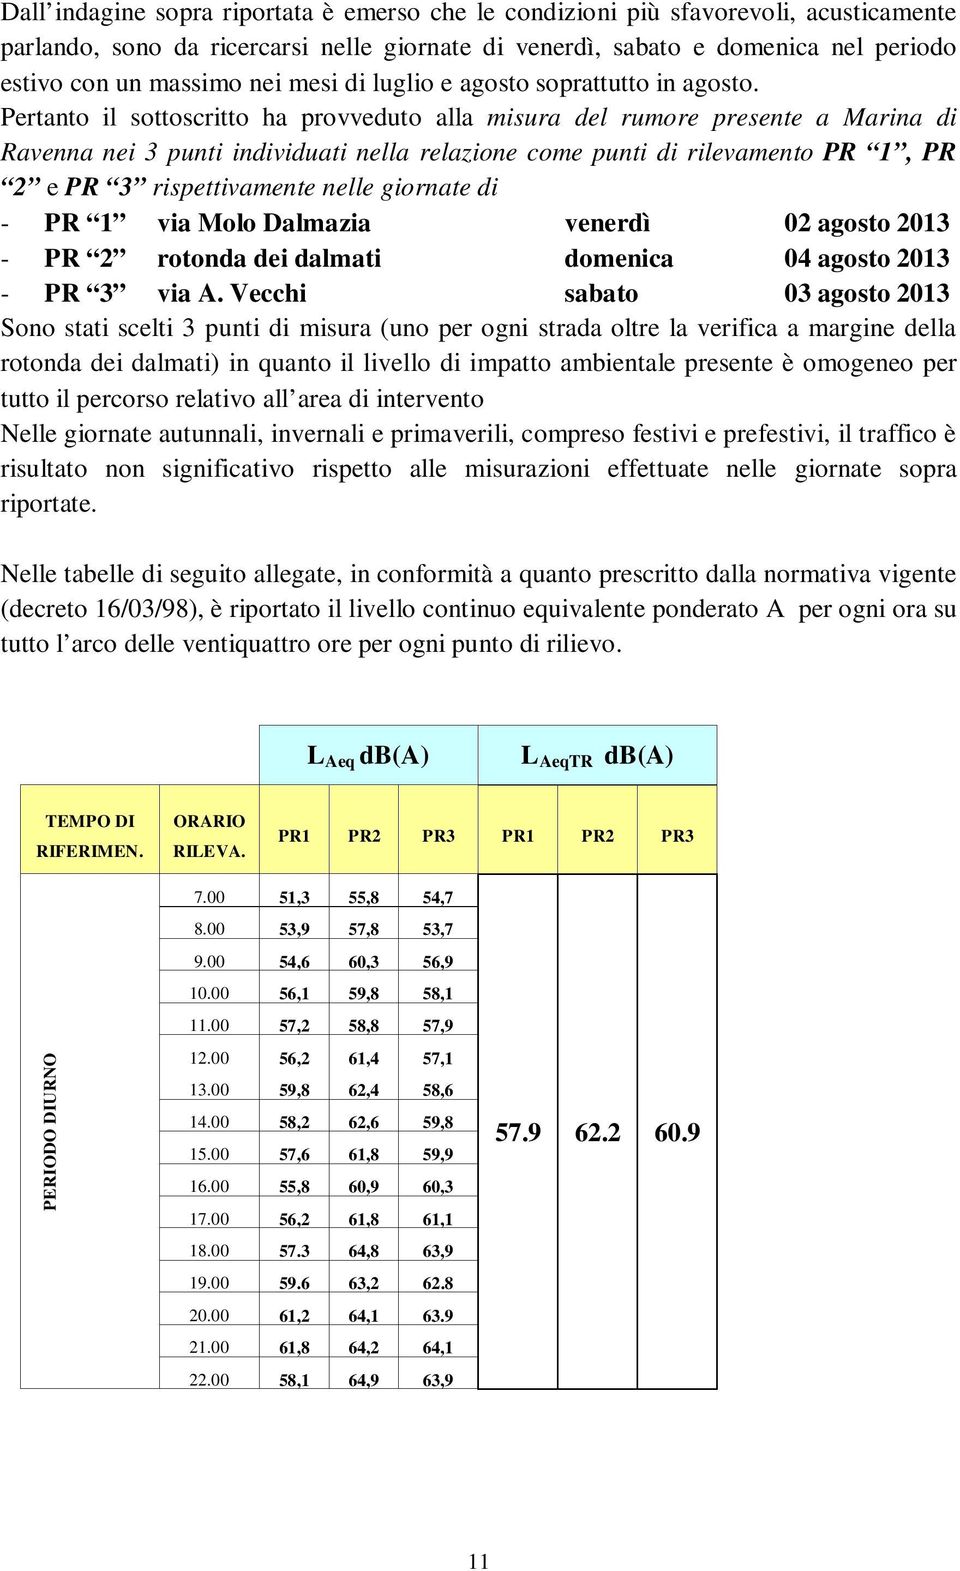 Pertanto il sottoscritto ha provveduto alla misura del rumore presente a Marina di Ravenna nei 3 punti individuati nella relazione come punti di rilevamento PR 1, PR 2 e PR 3 rispettivamente nelle